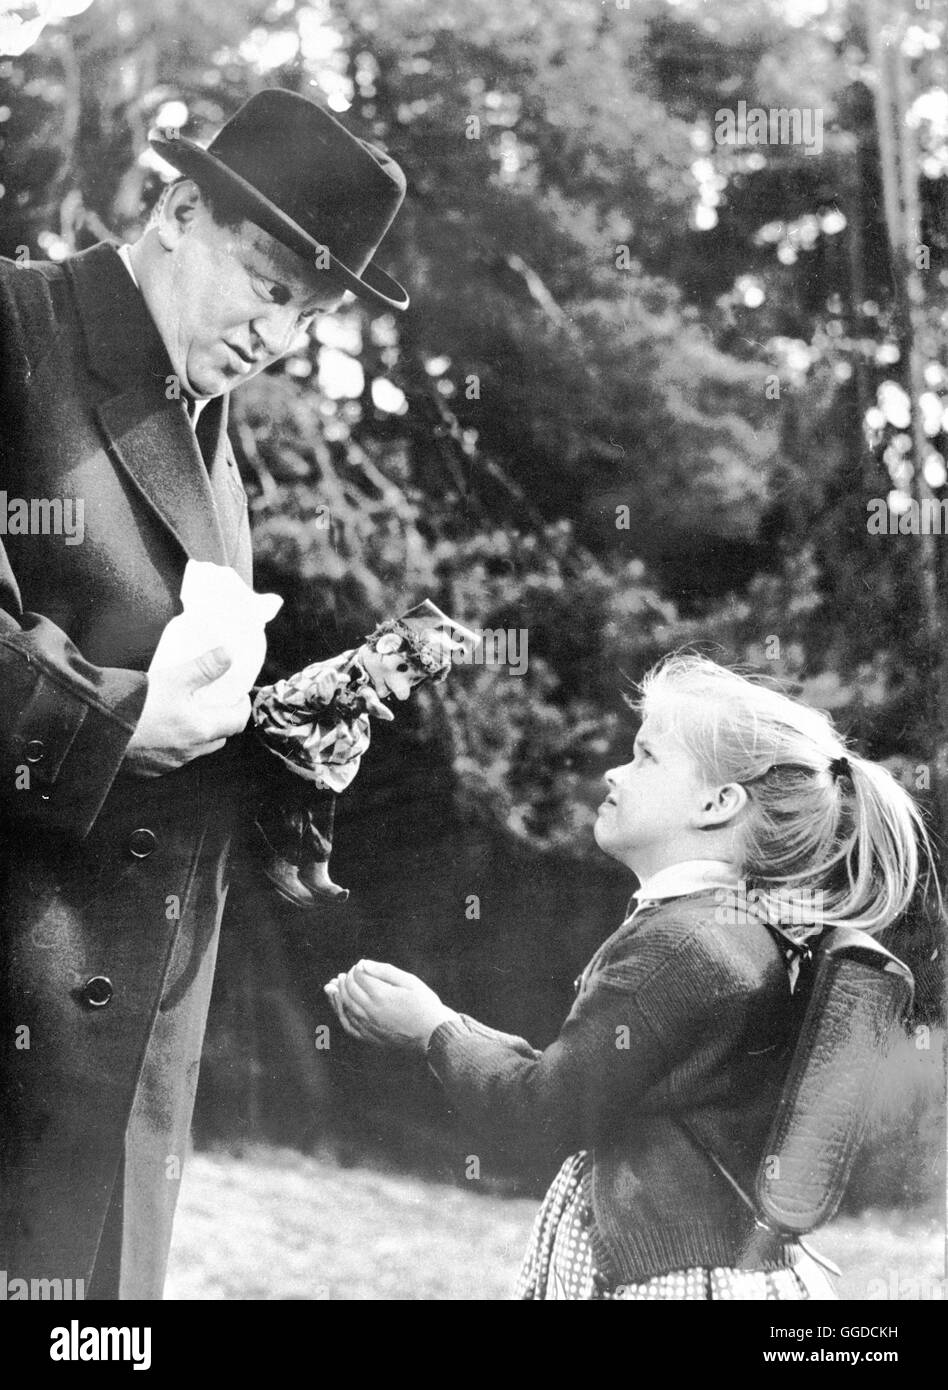 ES GESCHAH AM HELLICHTEN TAG / Deutschland/Schweiz 1958 / Ladislao Vajda Szene mit ANITA VON OW (Annemarie), GERT FRÖBE (Schrott) Regie: Ladislao Vajda Stock Photo